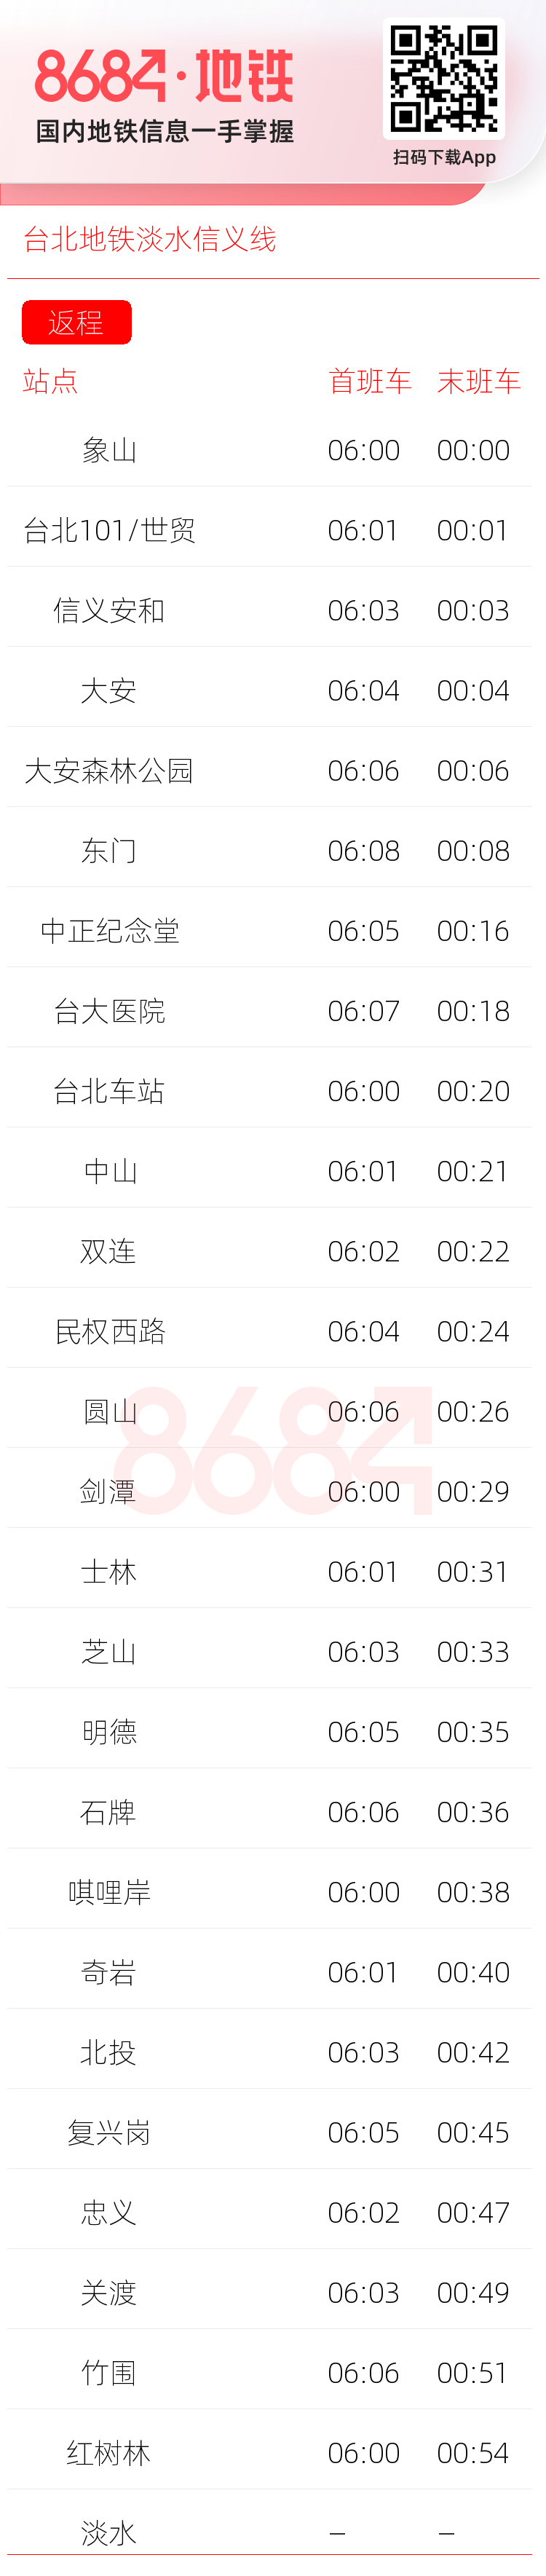 台北地铁淡水信义线运营时间表